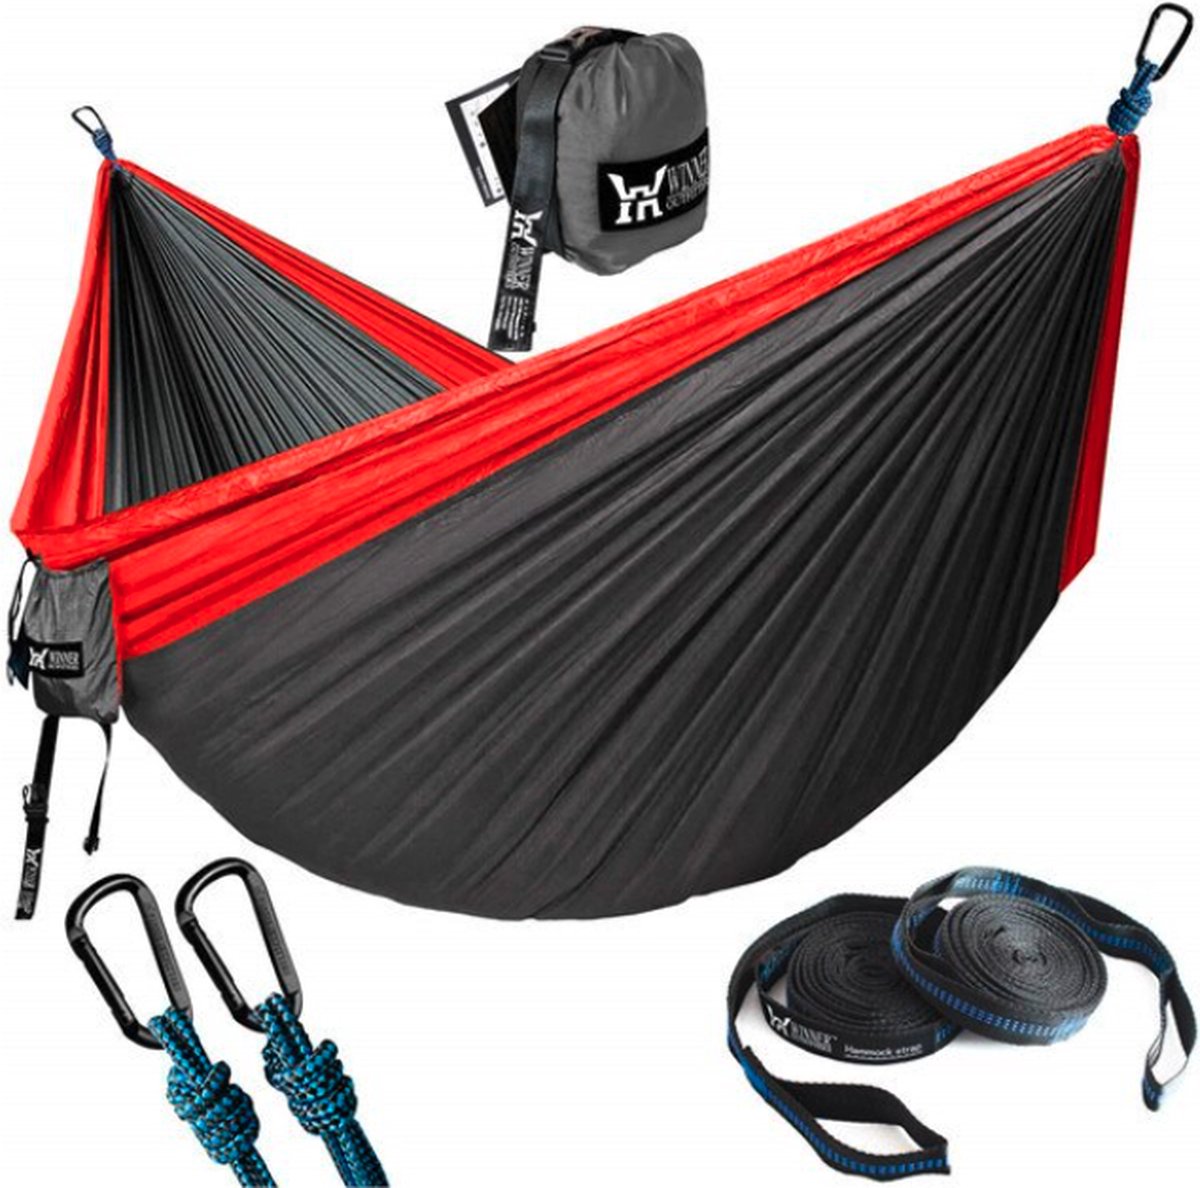 Hangmat Dubbel & Enkel | Draagbare Lichte Hangmat + Boombanden - Outdoor - Camping